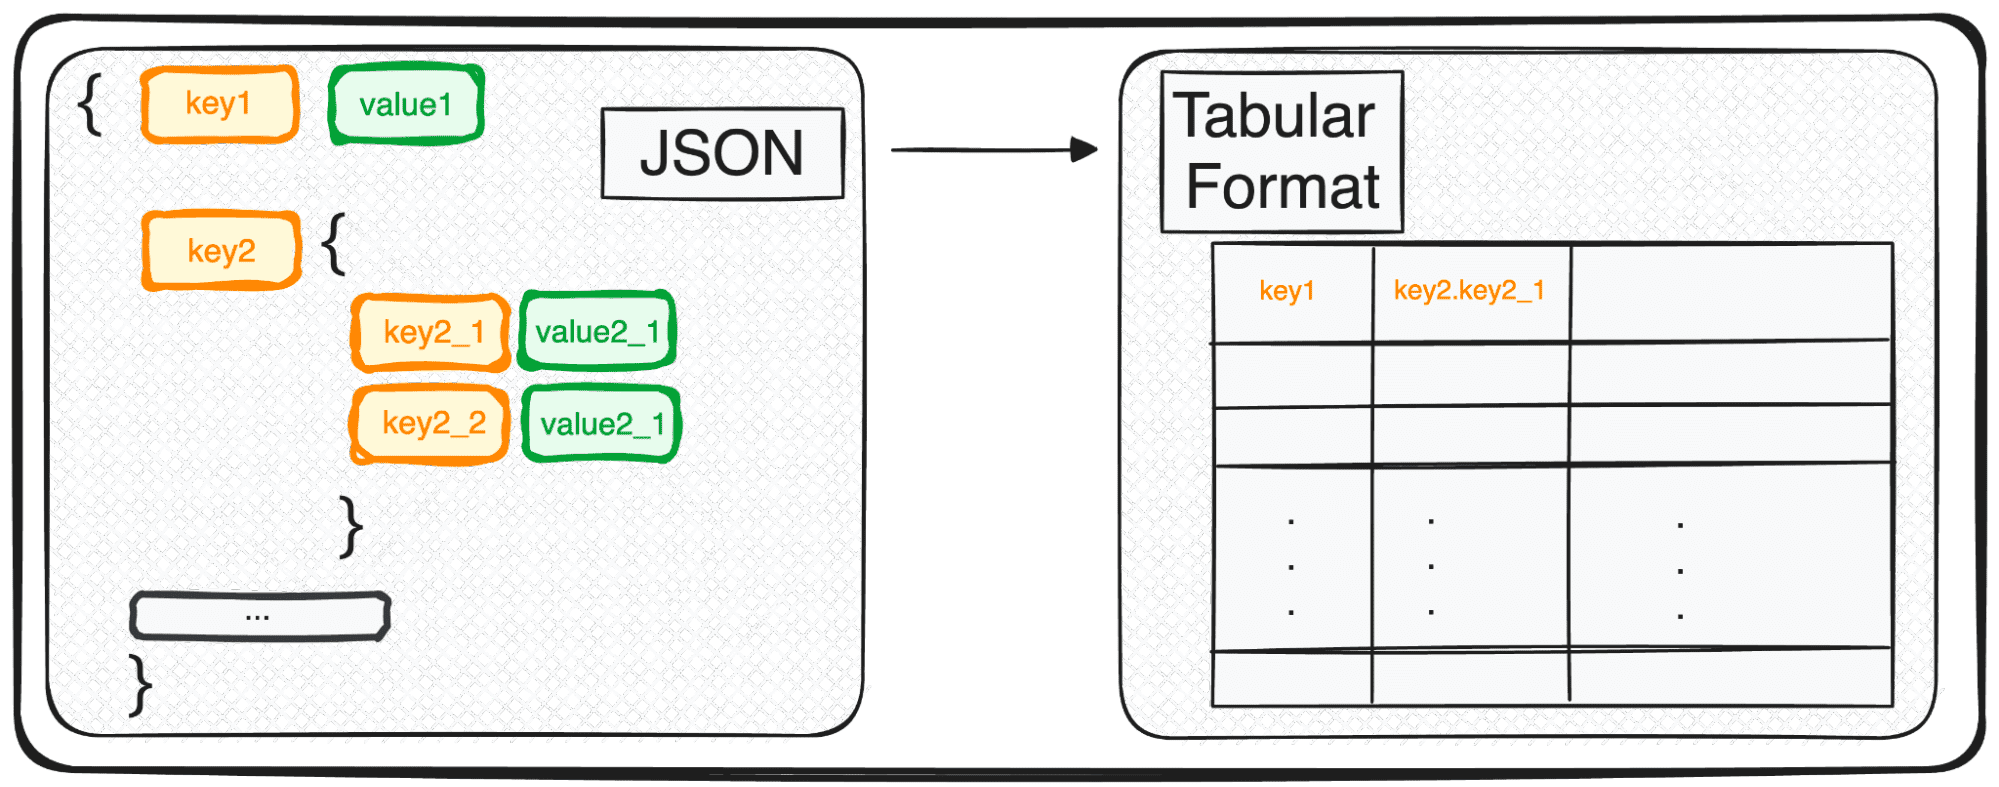 Convertire JSON in DataFrames Panda: analizzarli nel modo giusto - KDnuggets